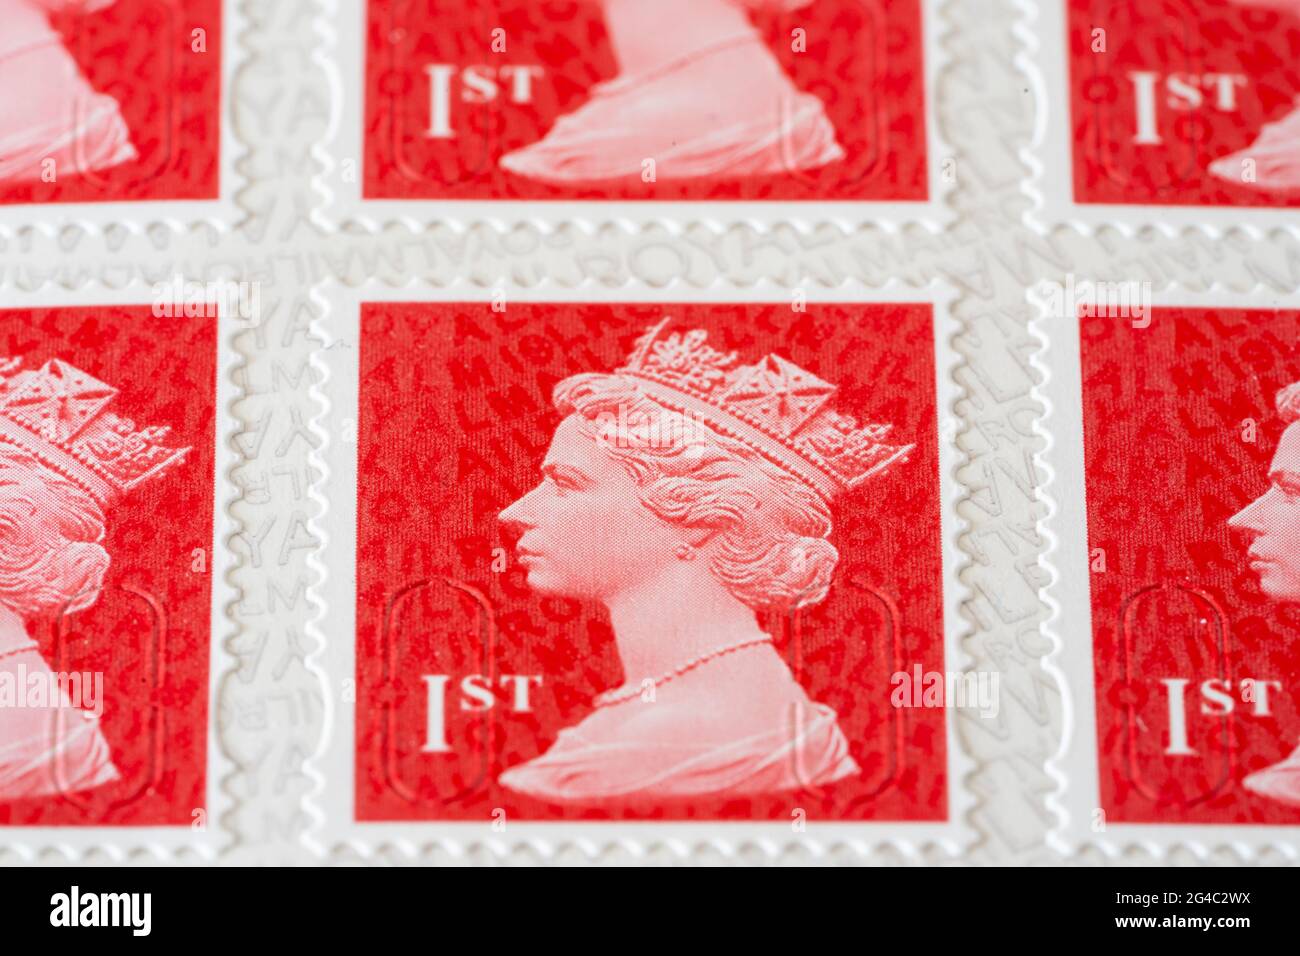 Immagini in primo piano macro scarlatto di Royal Mail francobolli di prima classe per francobolli con un'immagine della testa della Regina Elisabetta II, grande profondità di campo. REGNO UNITO Foto Stock